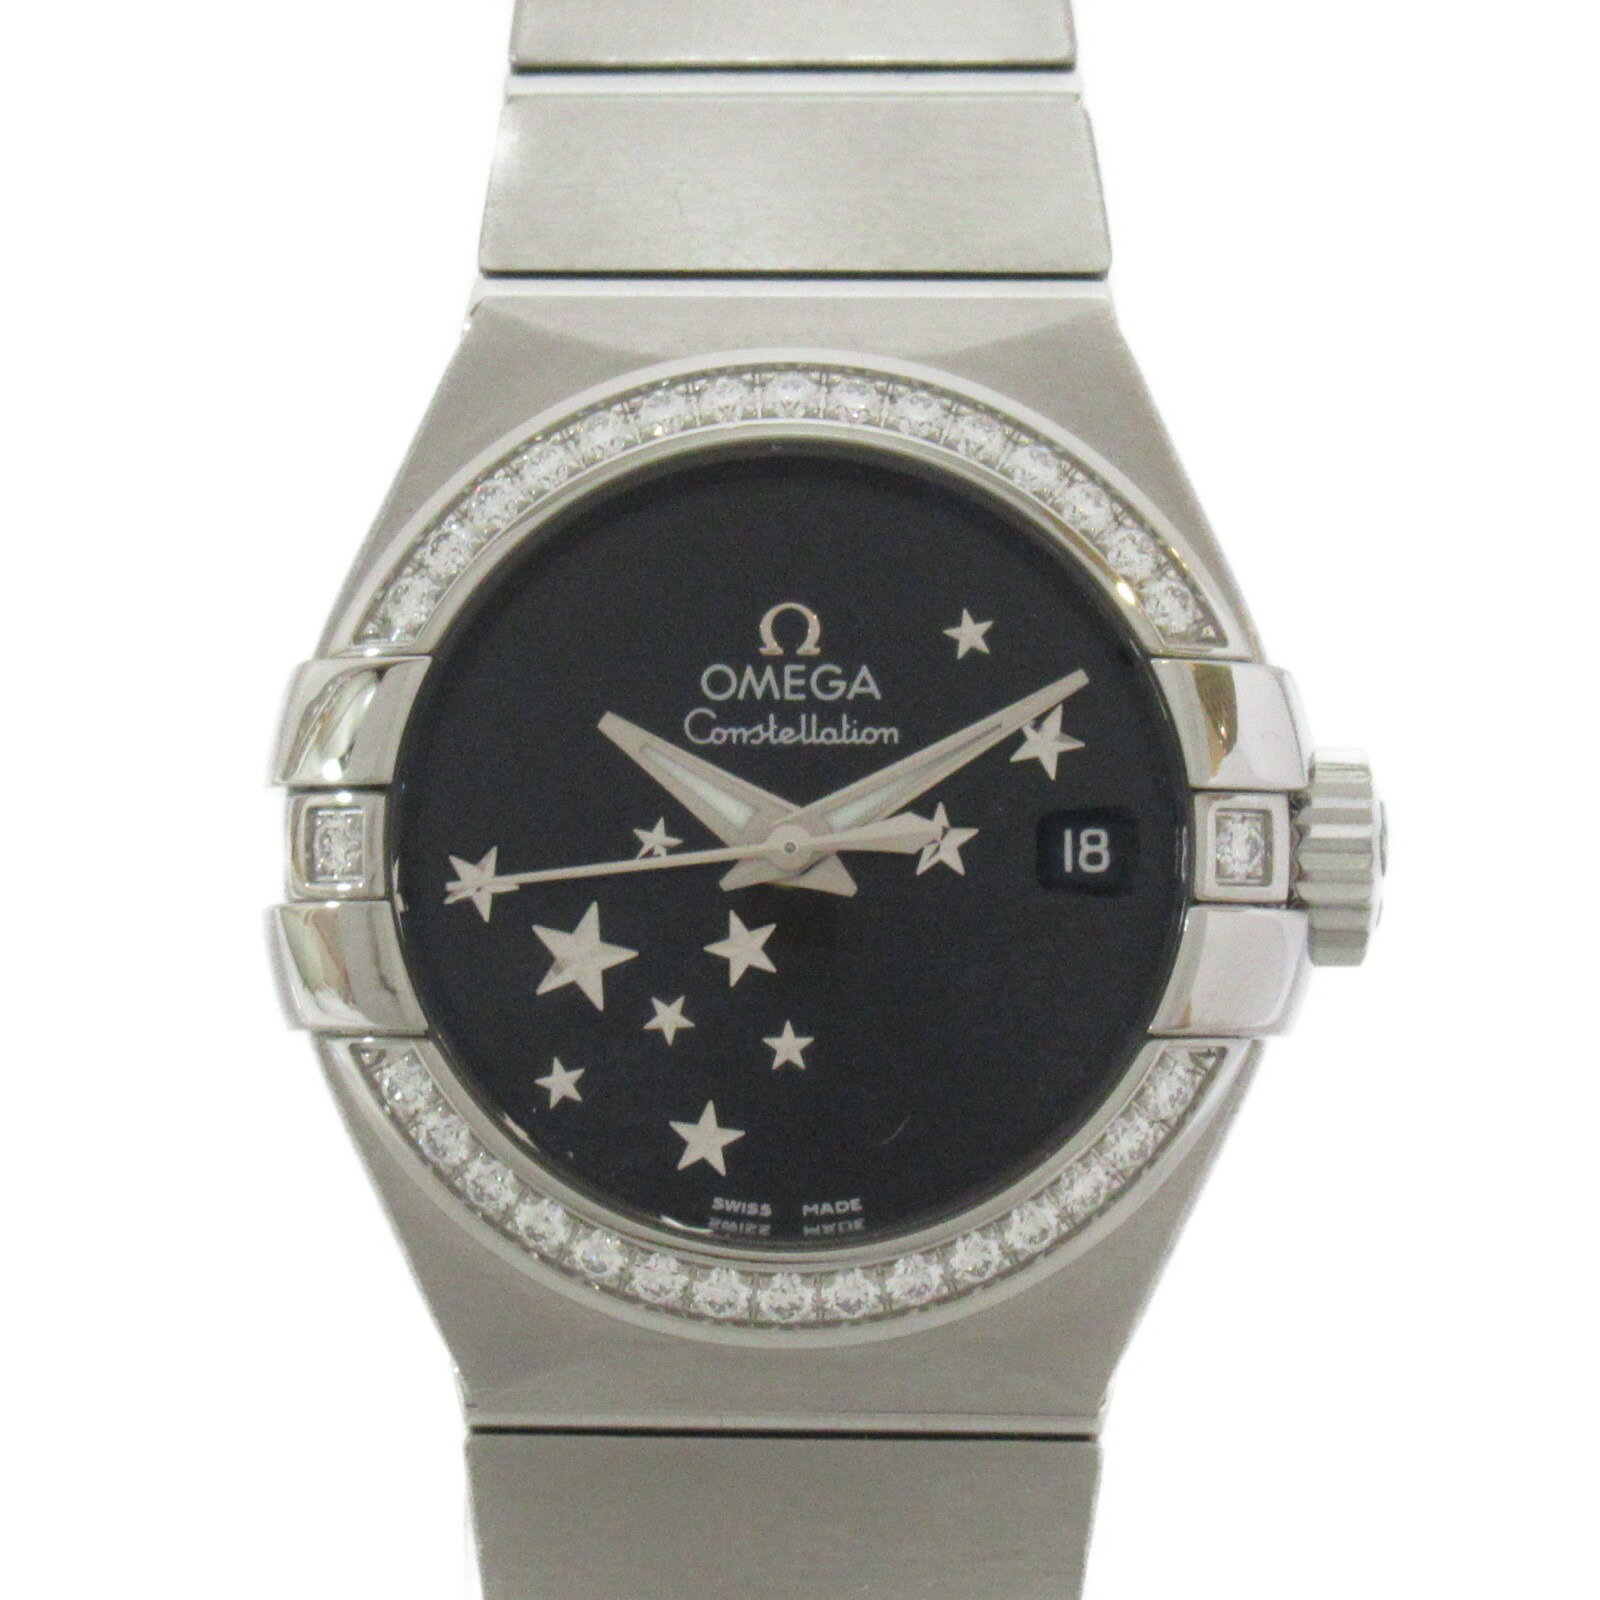 オメガ OMEGA コンステレーション 腕時計 腕時計 時計 ステンレススチール ダイヤモンド レディース ブラック系 ブラック 123.15.27.20.01.001 【中古】